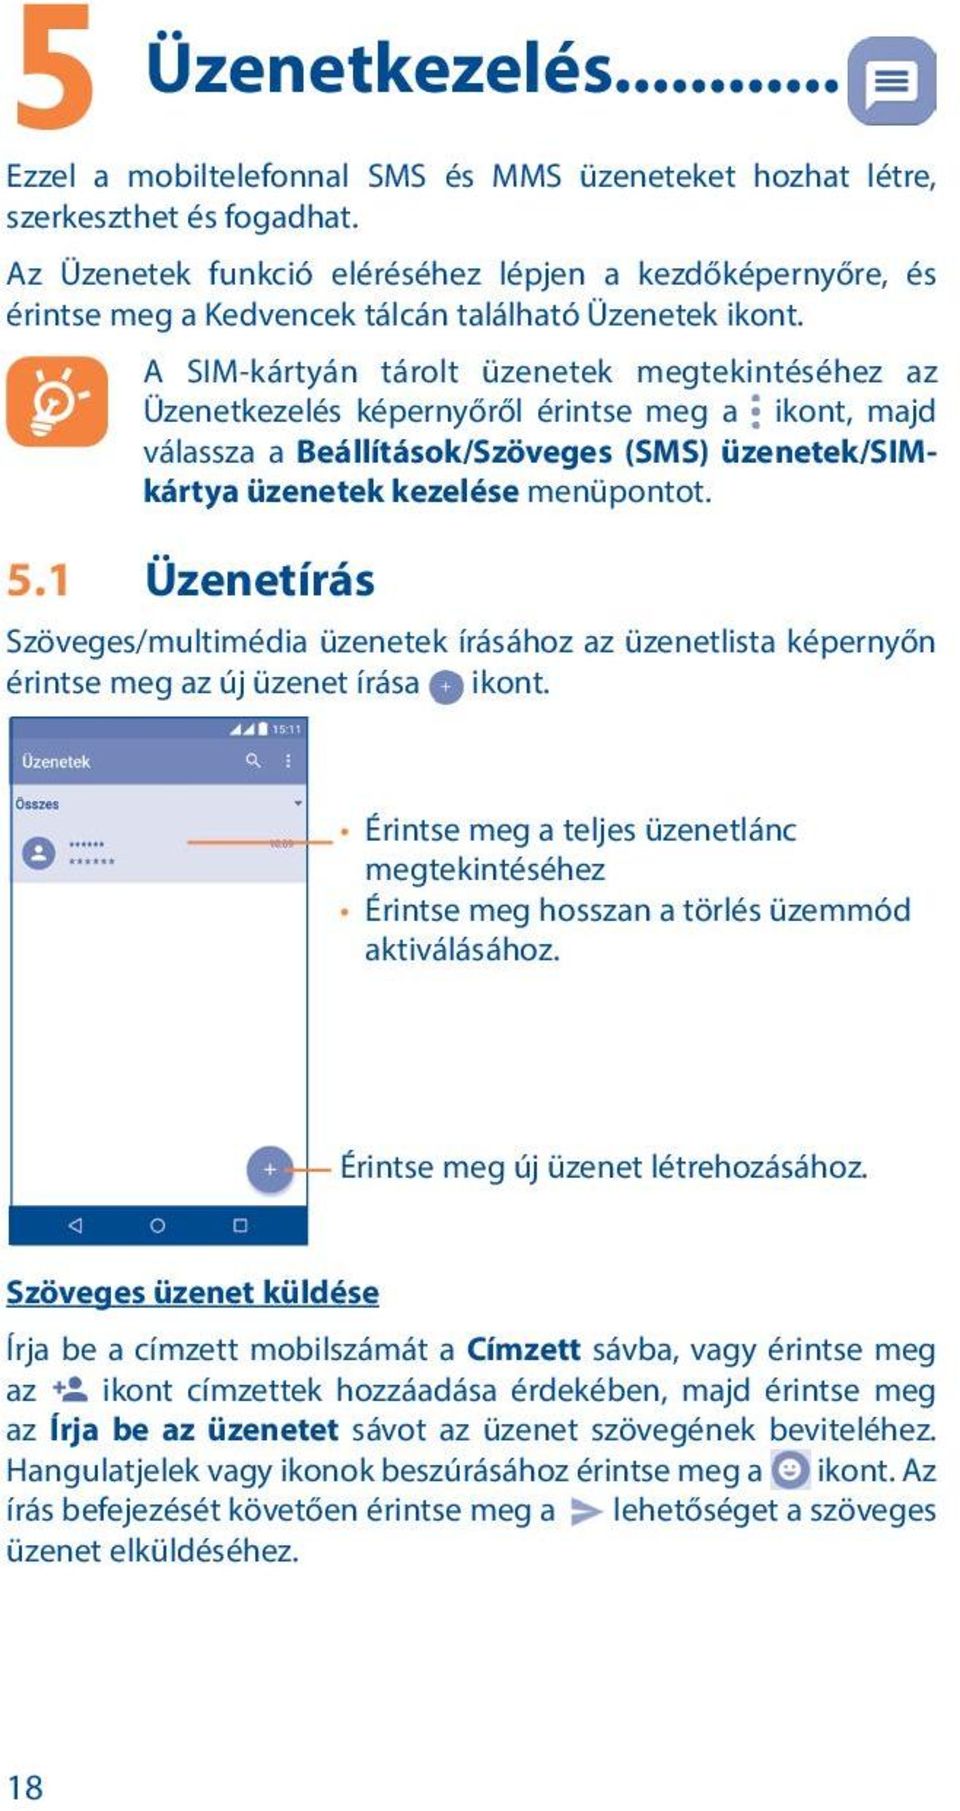 A SIM-kártyán tárolt üzenetek megtekintéséhez az Üzenetkezelés képernyőről érintse meg a ikont, majd válassza a Beállítások/Szöveges (SMS) üzenetek/simkártya üzenetek kezelése menüpontot. 5.